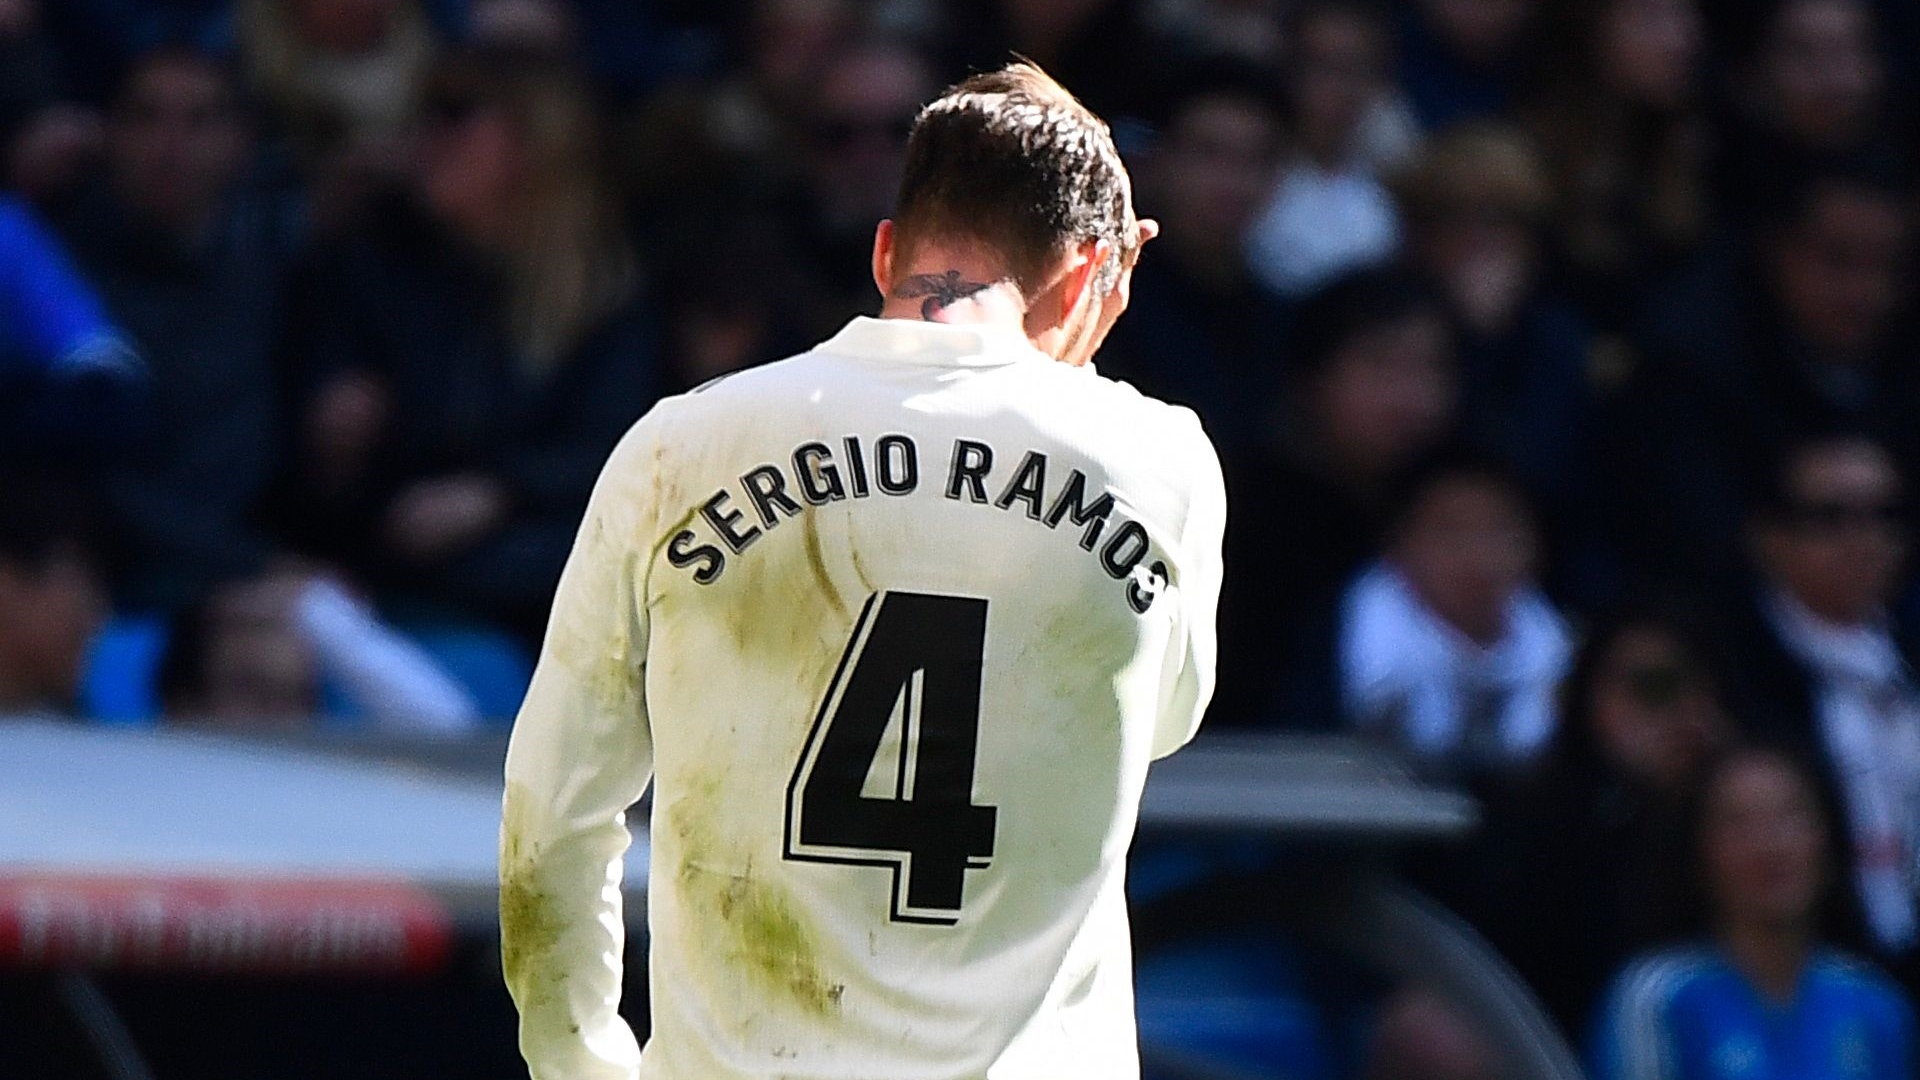 Sergio Ramos refuse de prolonger, le Real Madrid vise un nouveau défenseur central